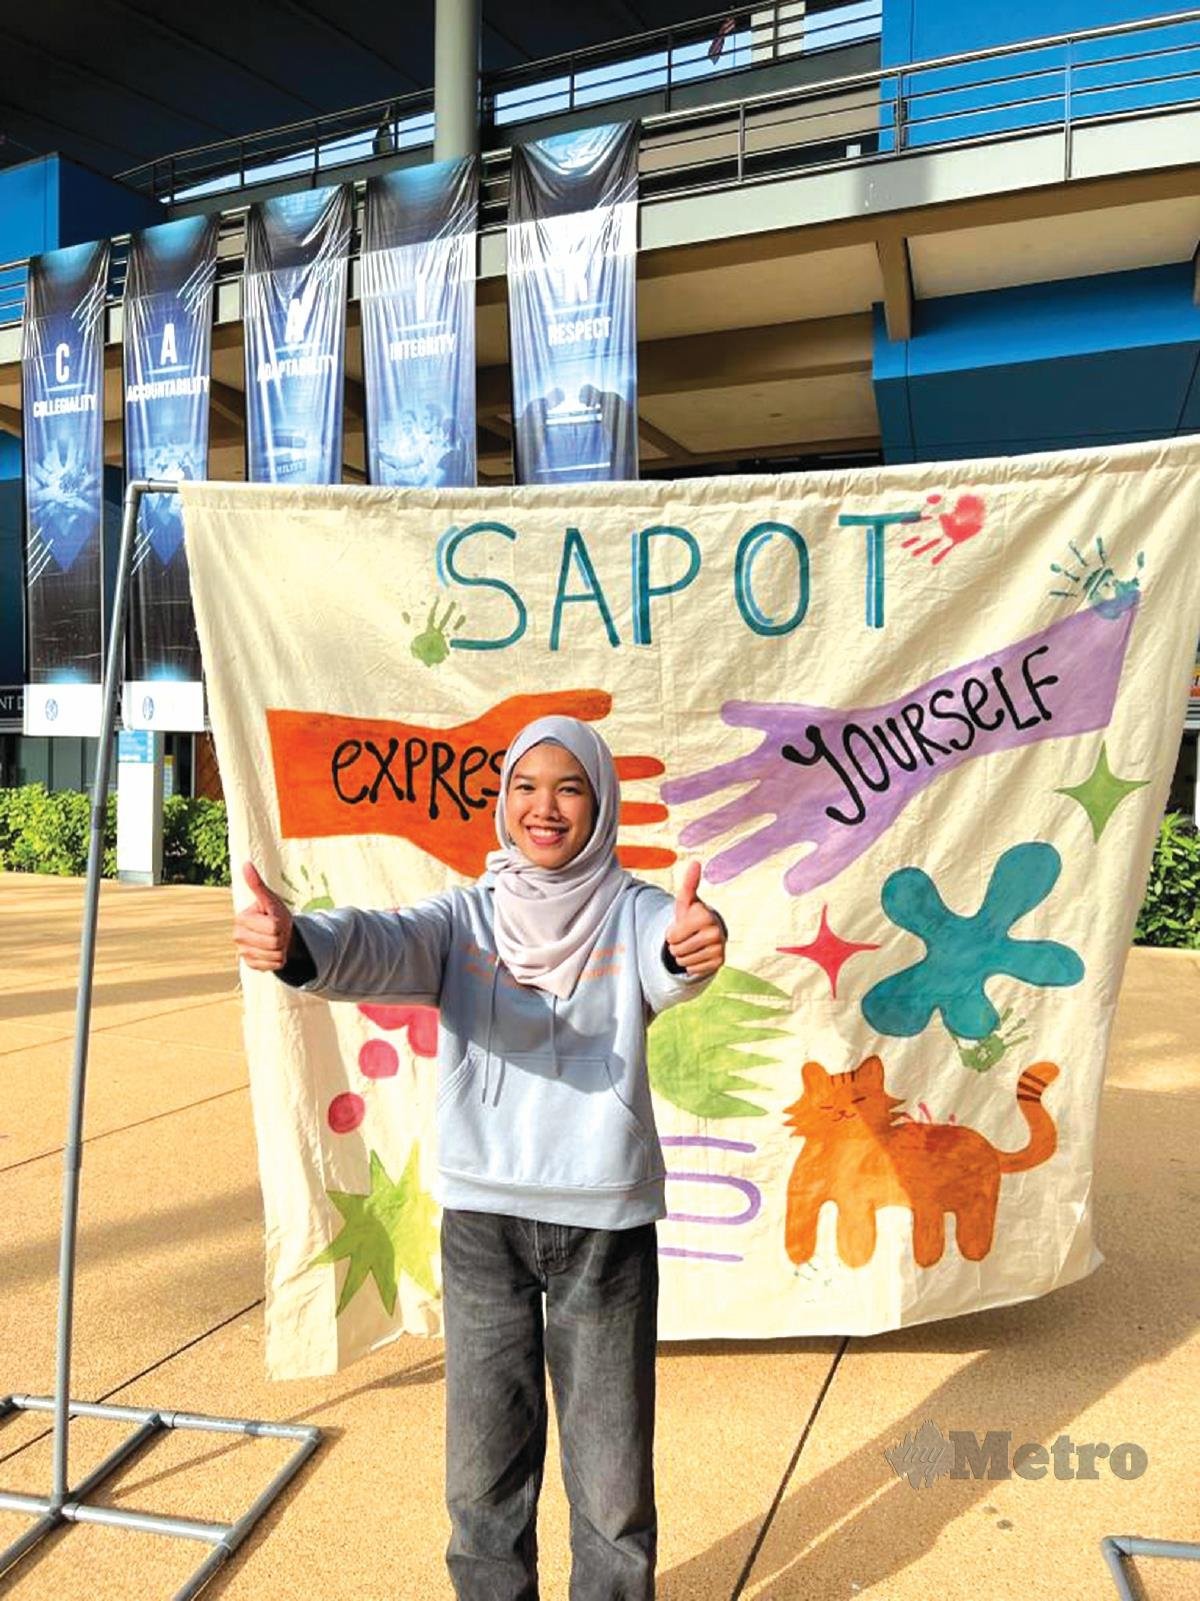 SAPOT berusaha menyebarkan semangat positif.